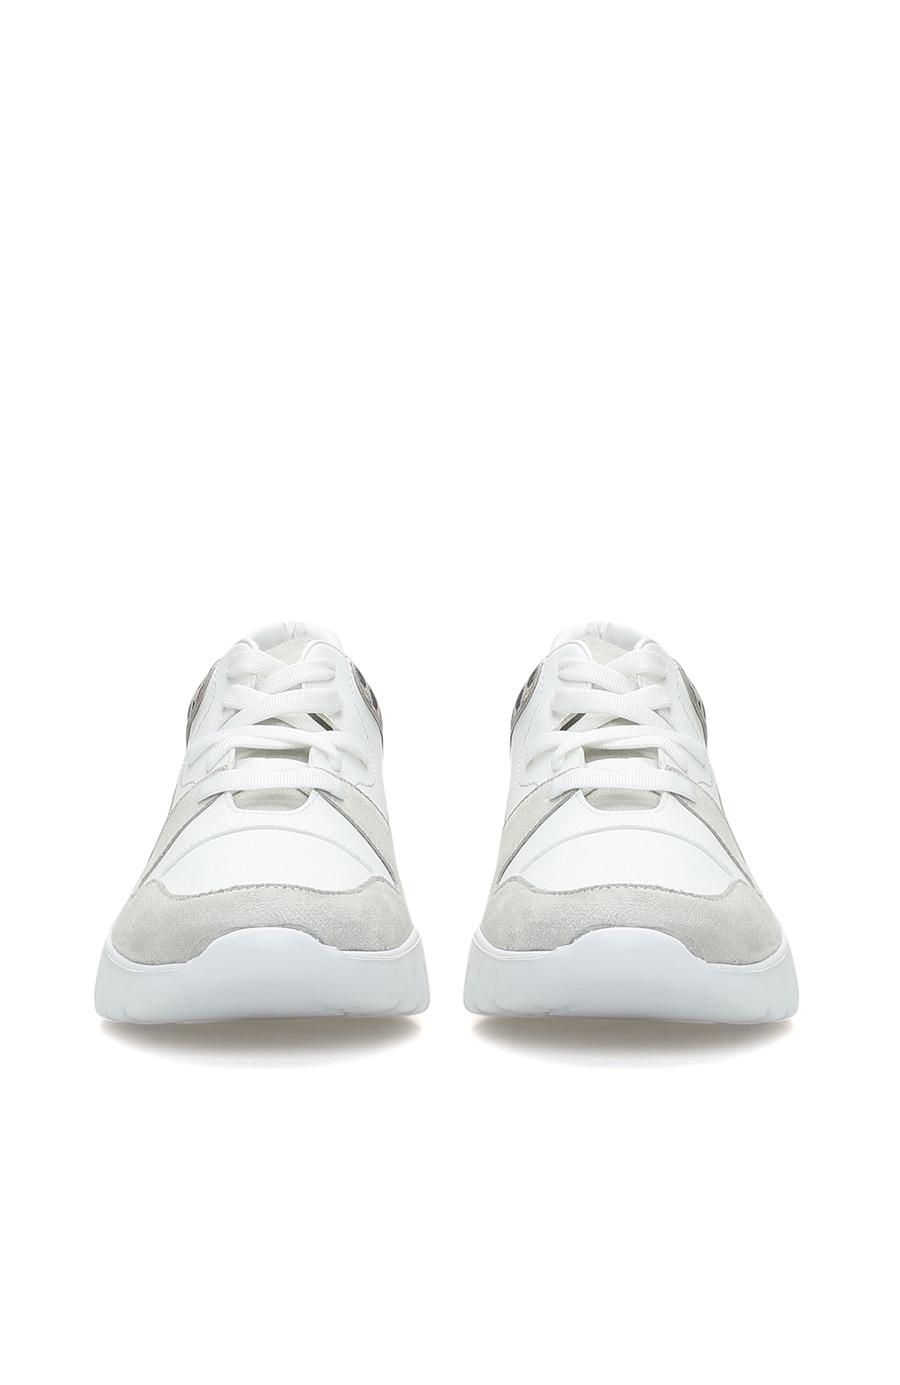 Leopar Beyaz Gri Kadın Sneaker